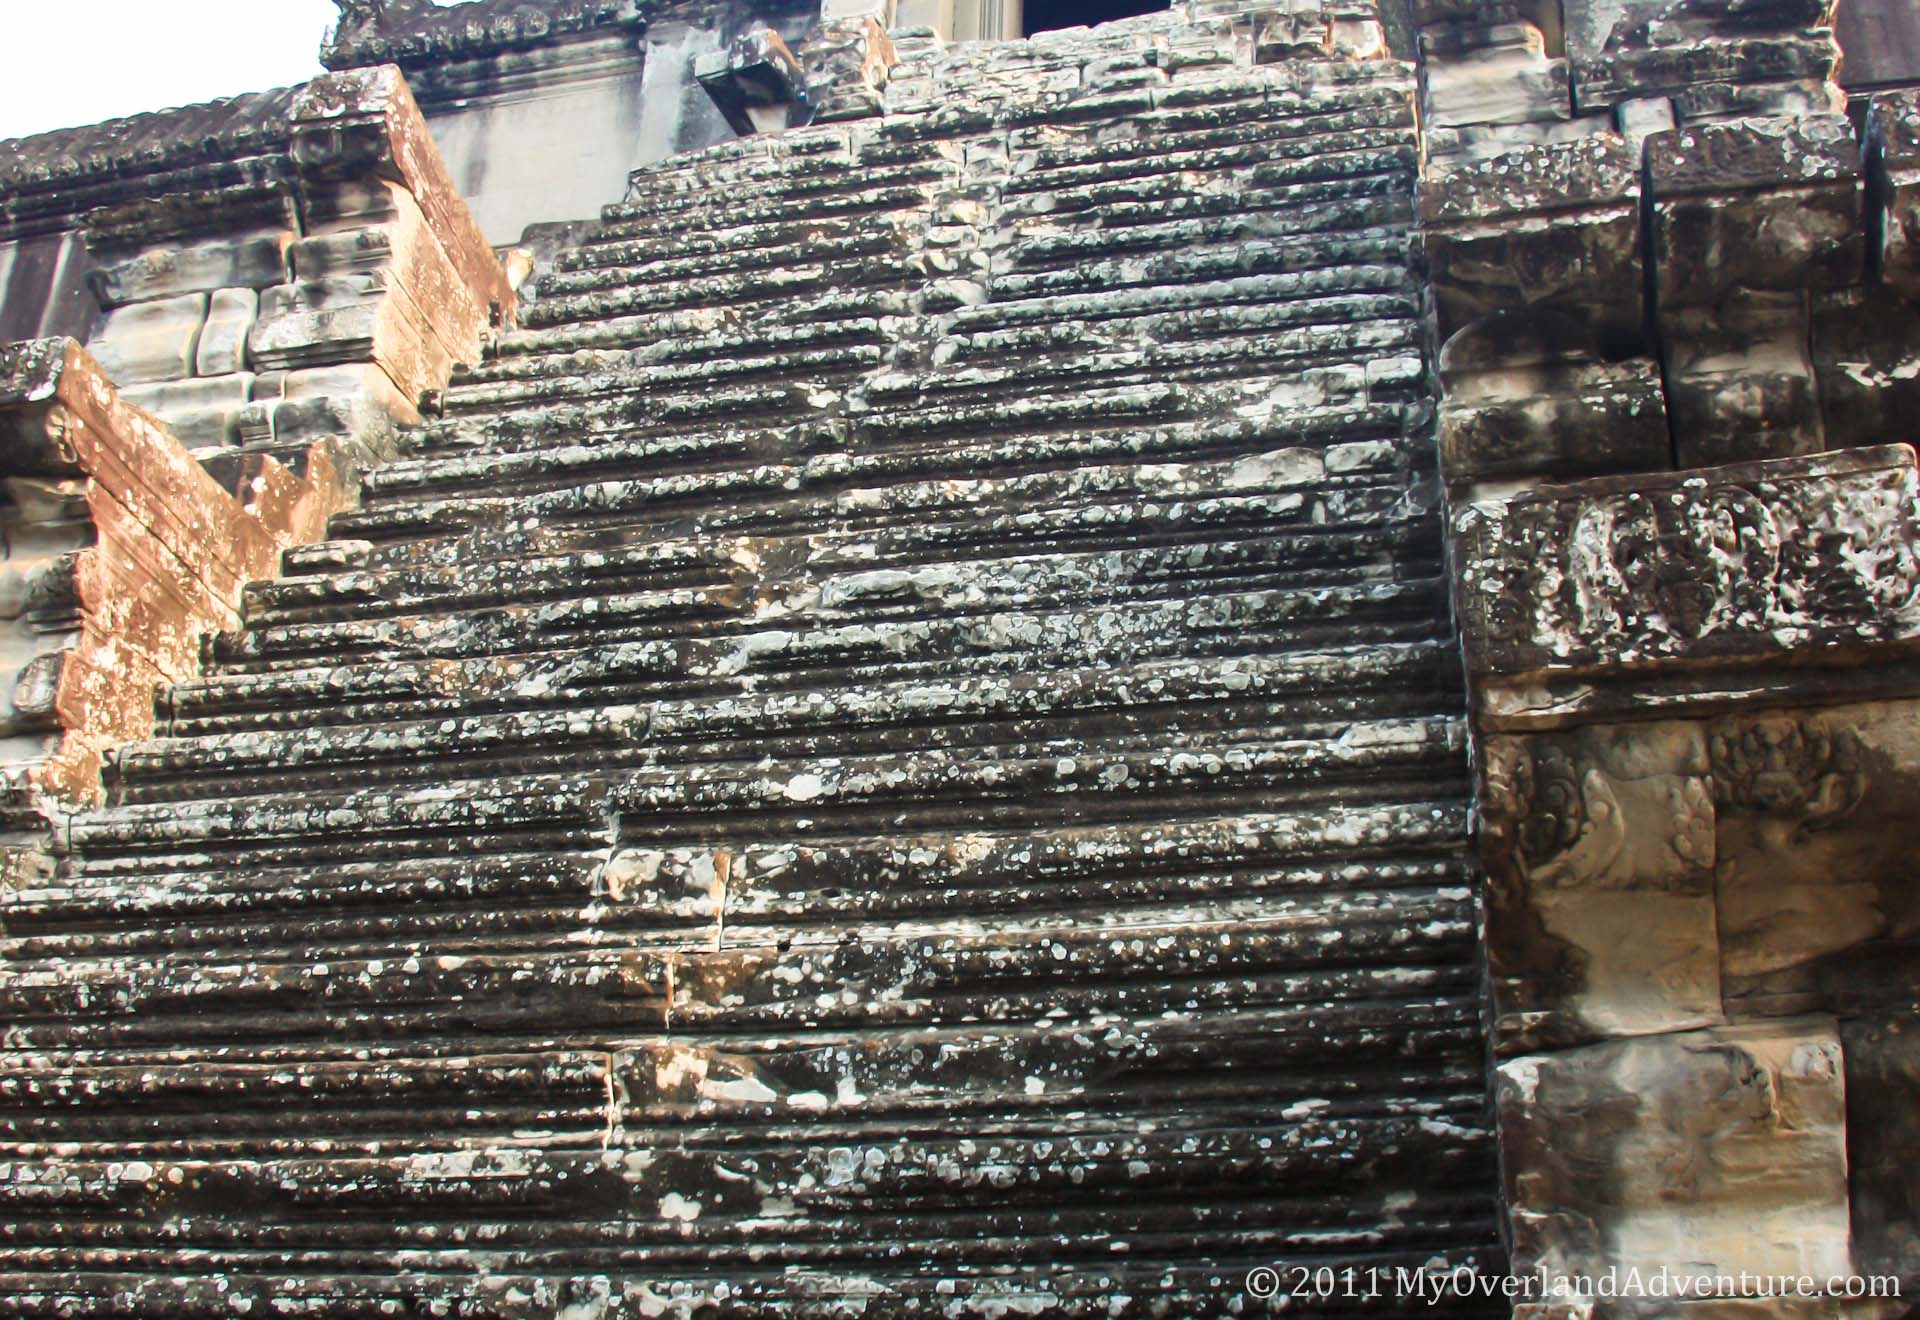 Angkor Wat Steep steps